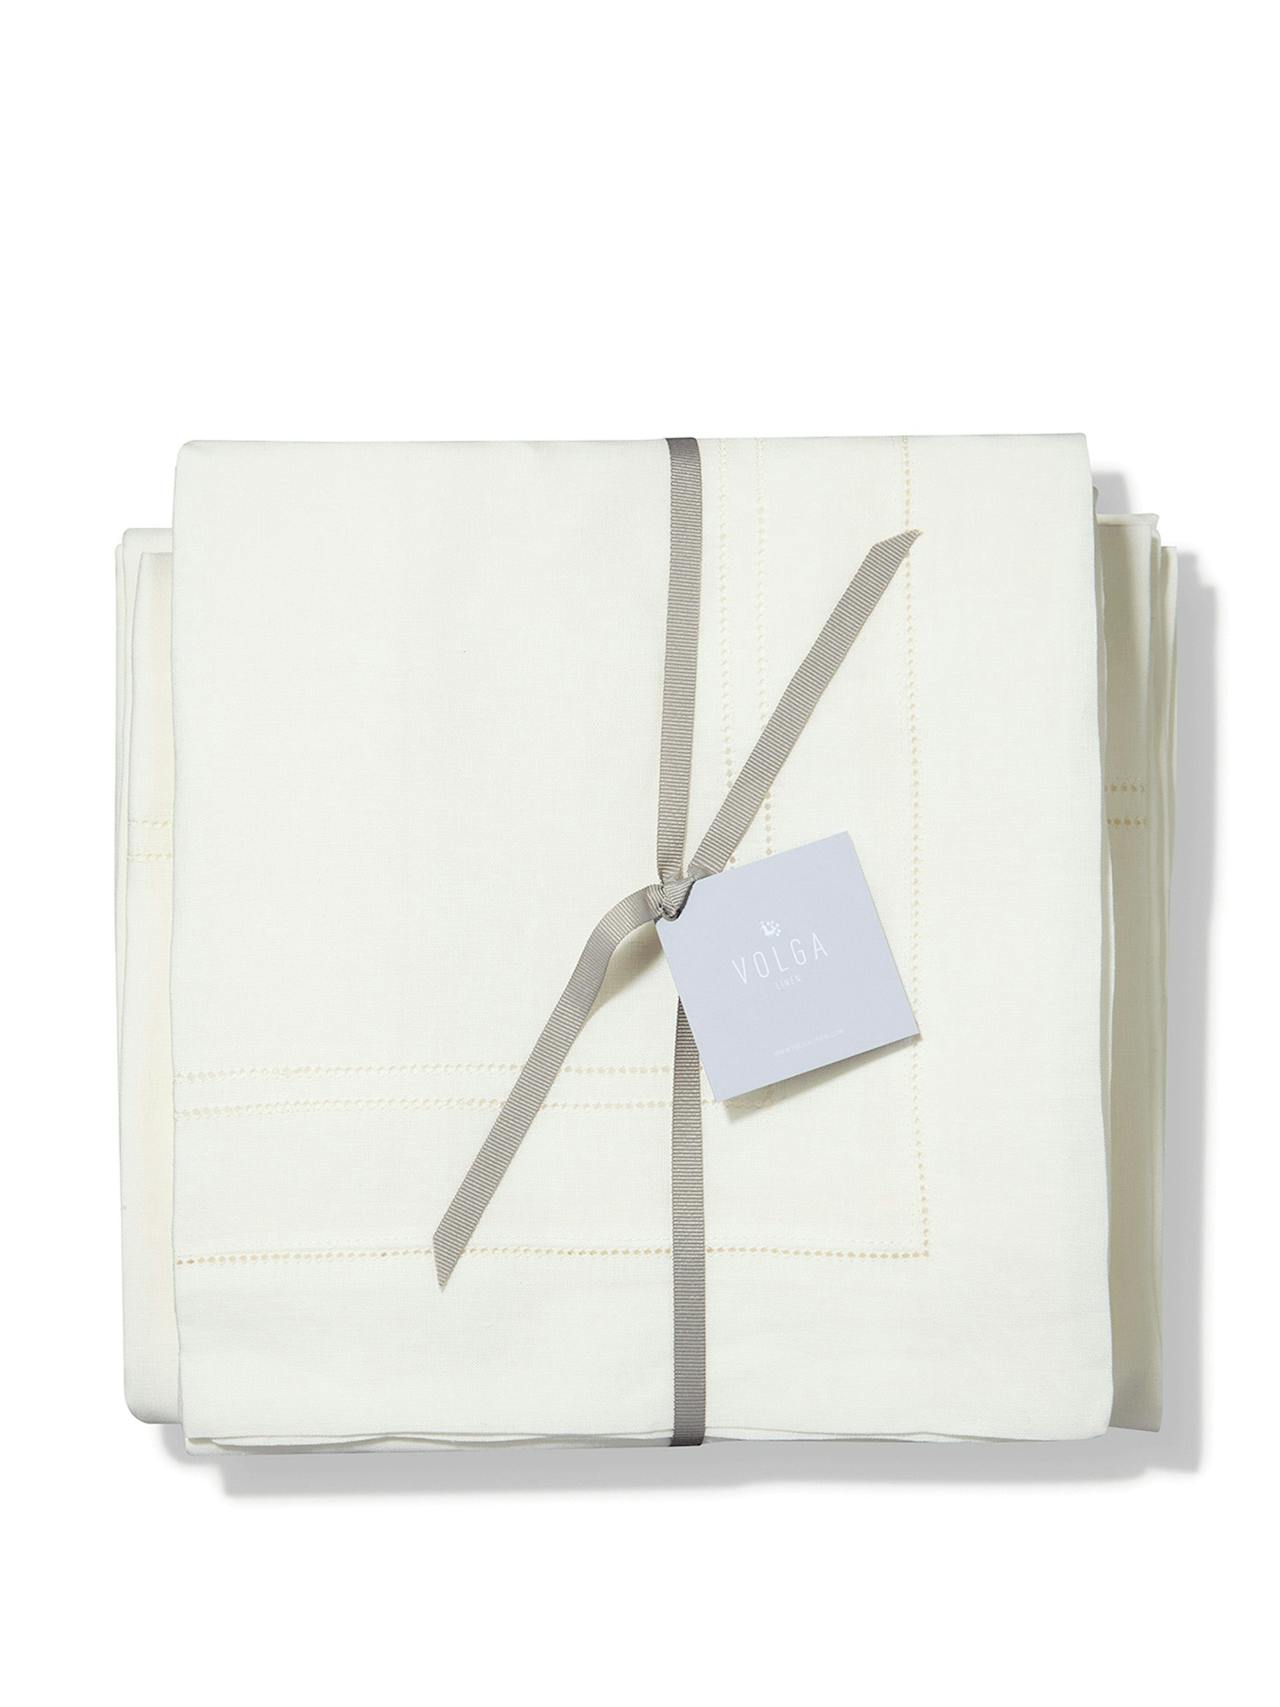 Set of bed linen ivory white hemstitch – duvet cover, x2 pillowcases